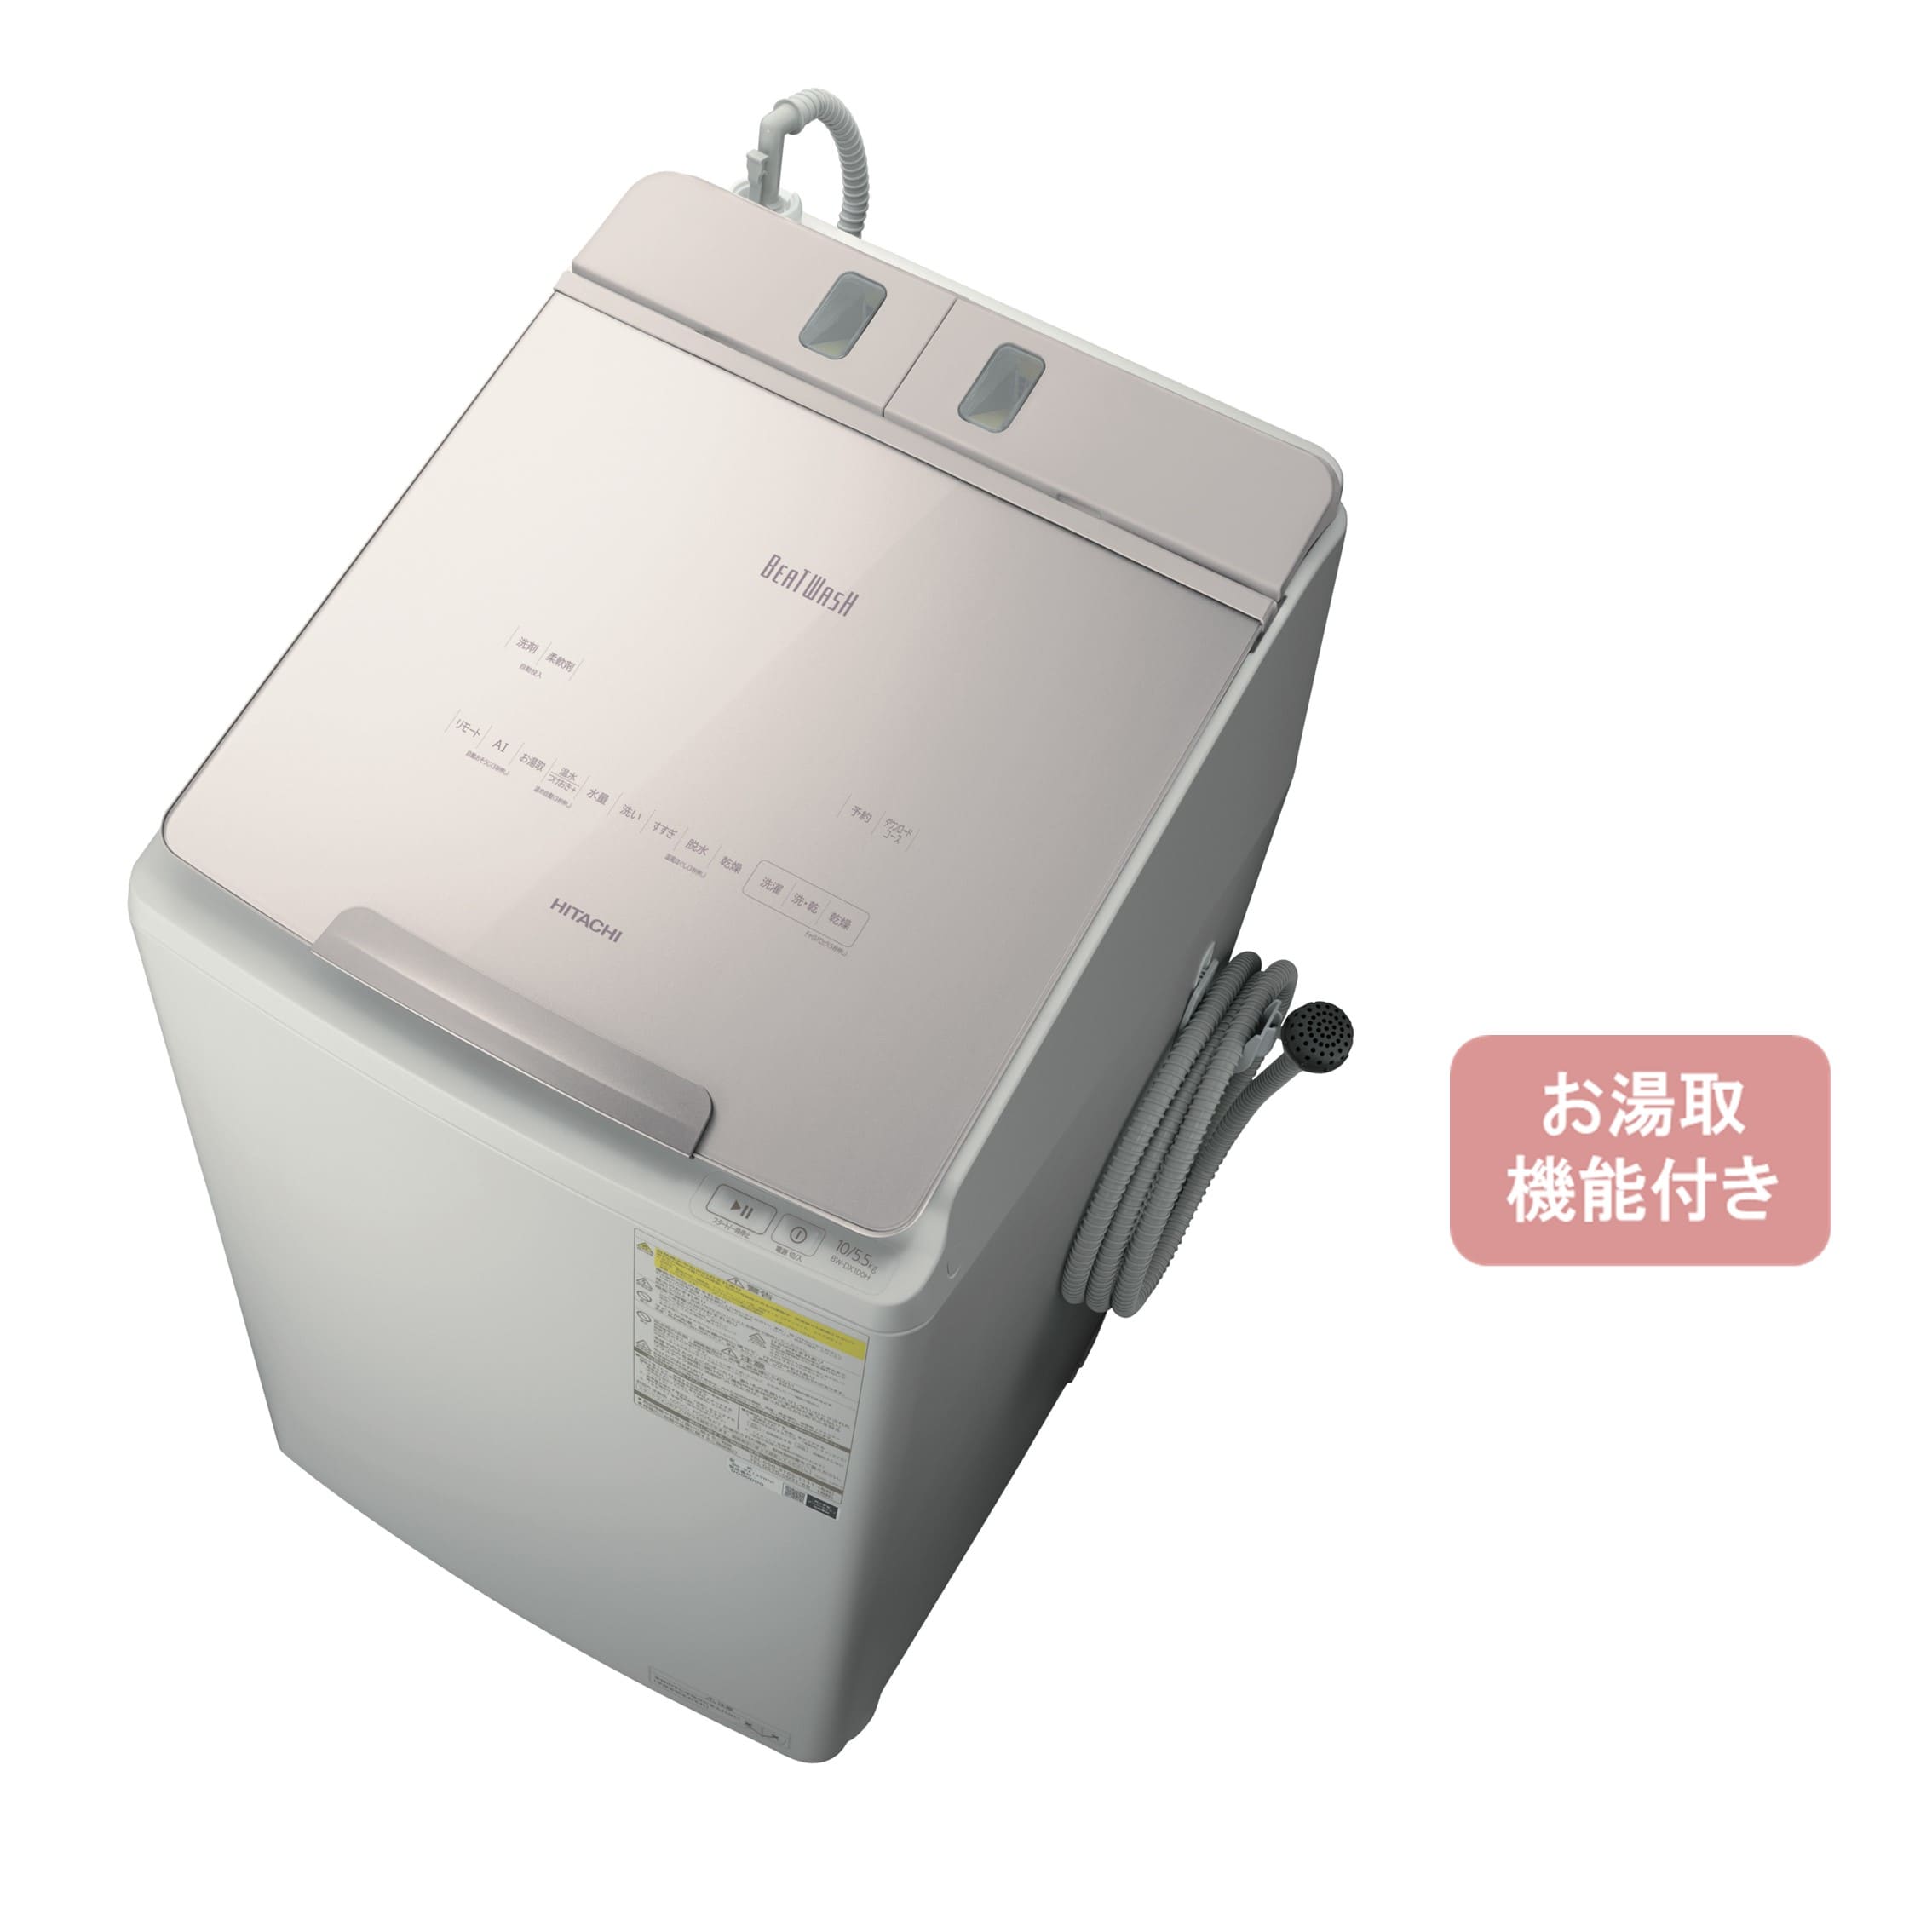 配送・設置可能】10kg 日立 洗濯機BW-D100WVE3 洗濯乾燥機 - 生活家電